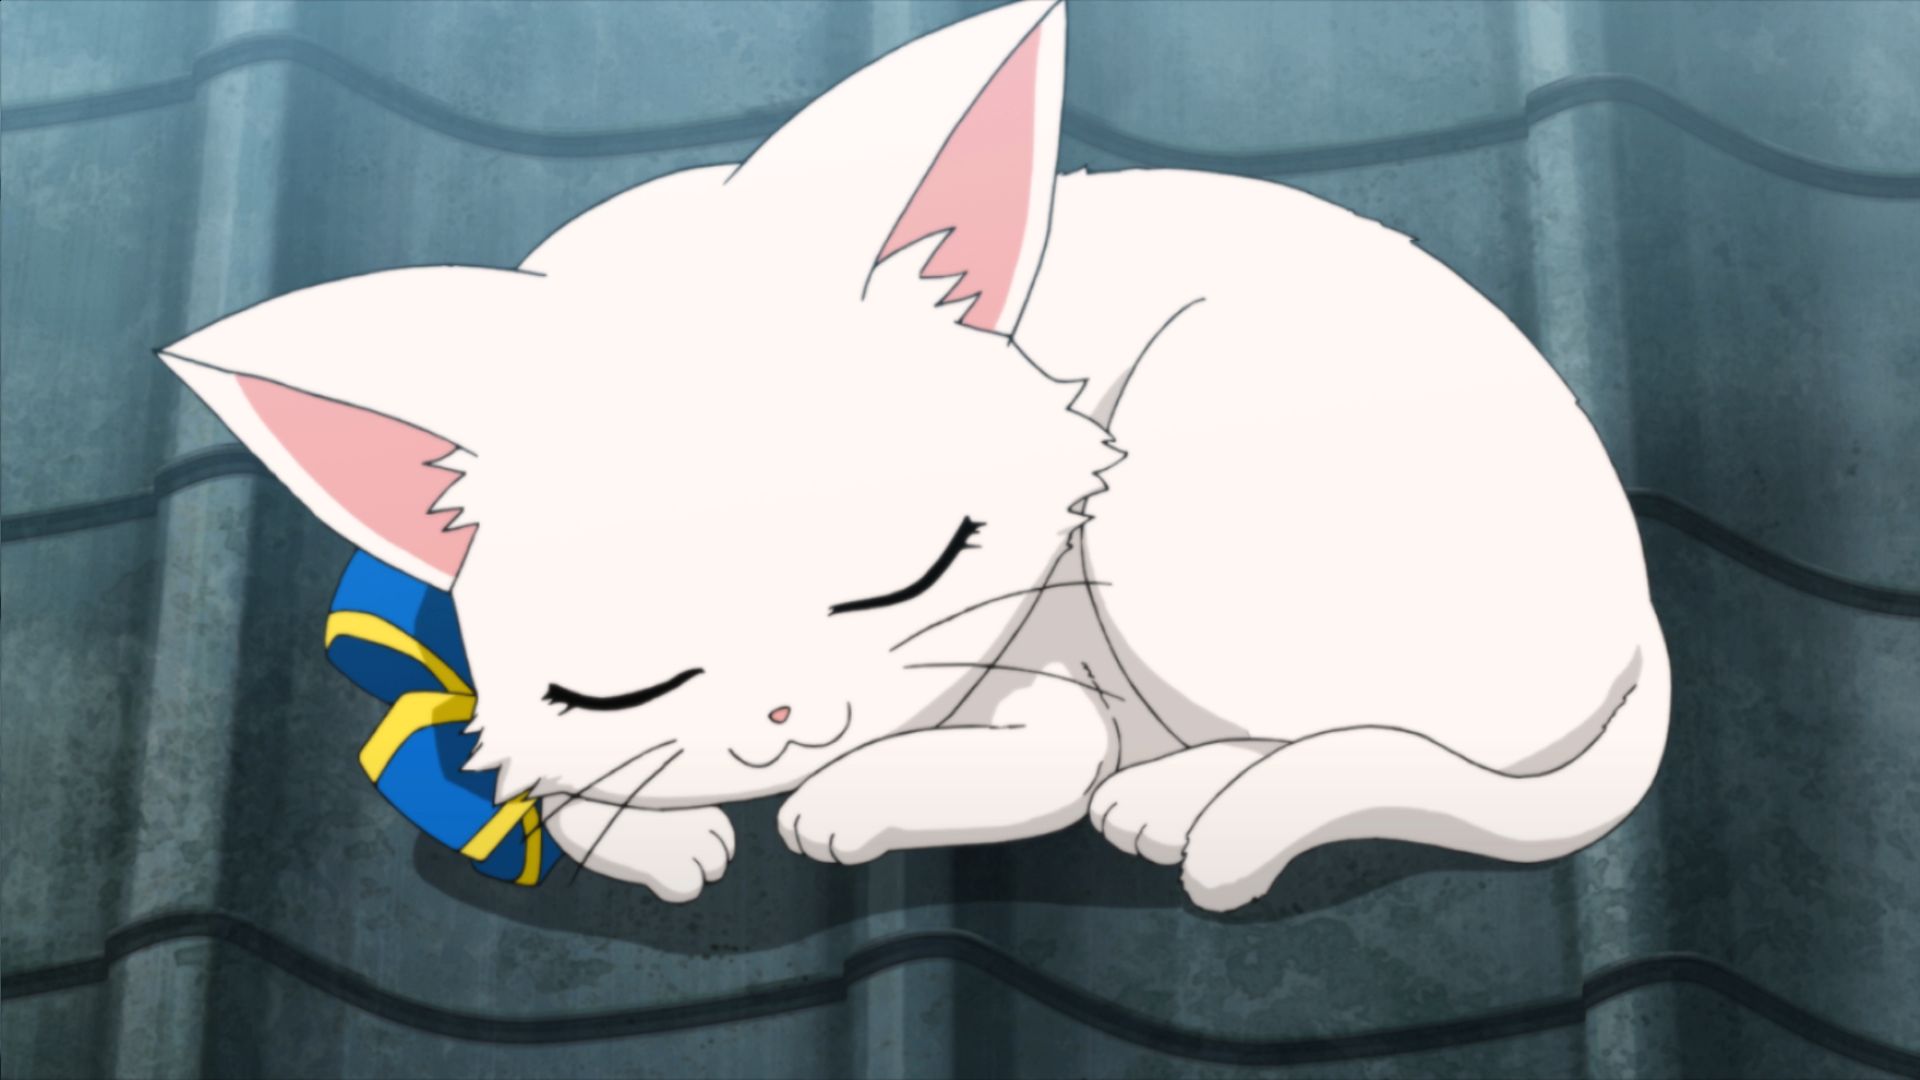 コロプラ 白猫プロジェクト キャラクター キャトラ がtvアニメ ミス モノクローム The Animation 3 に登場 Gamebiz